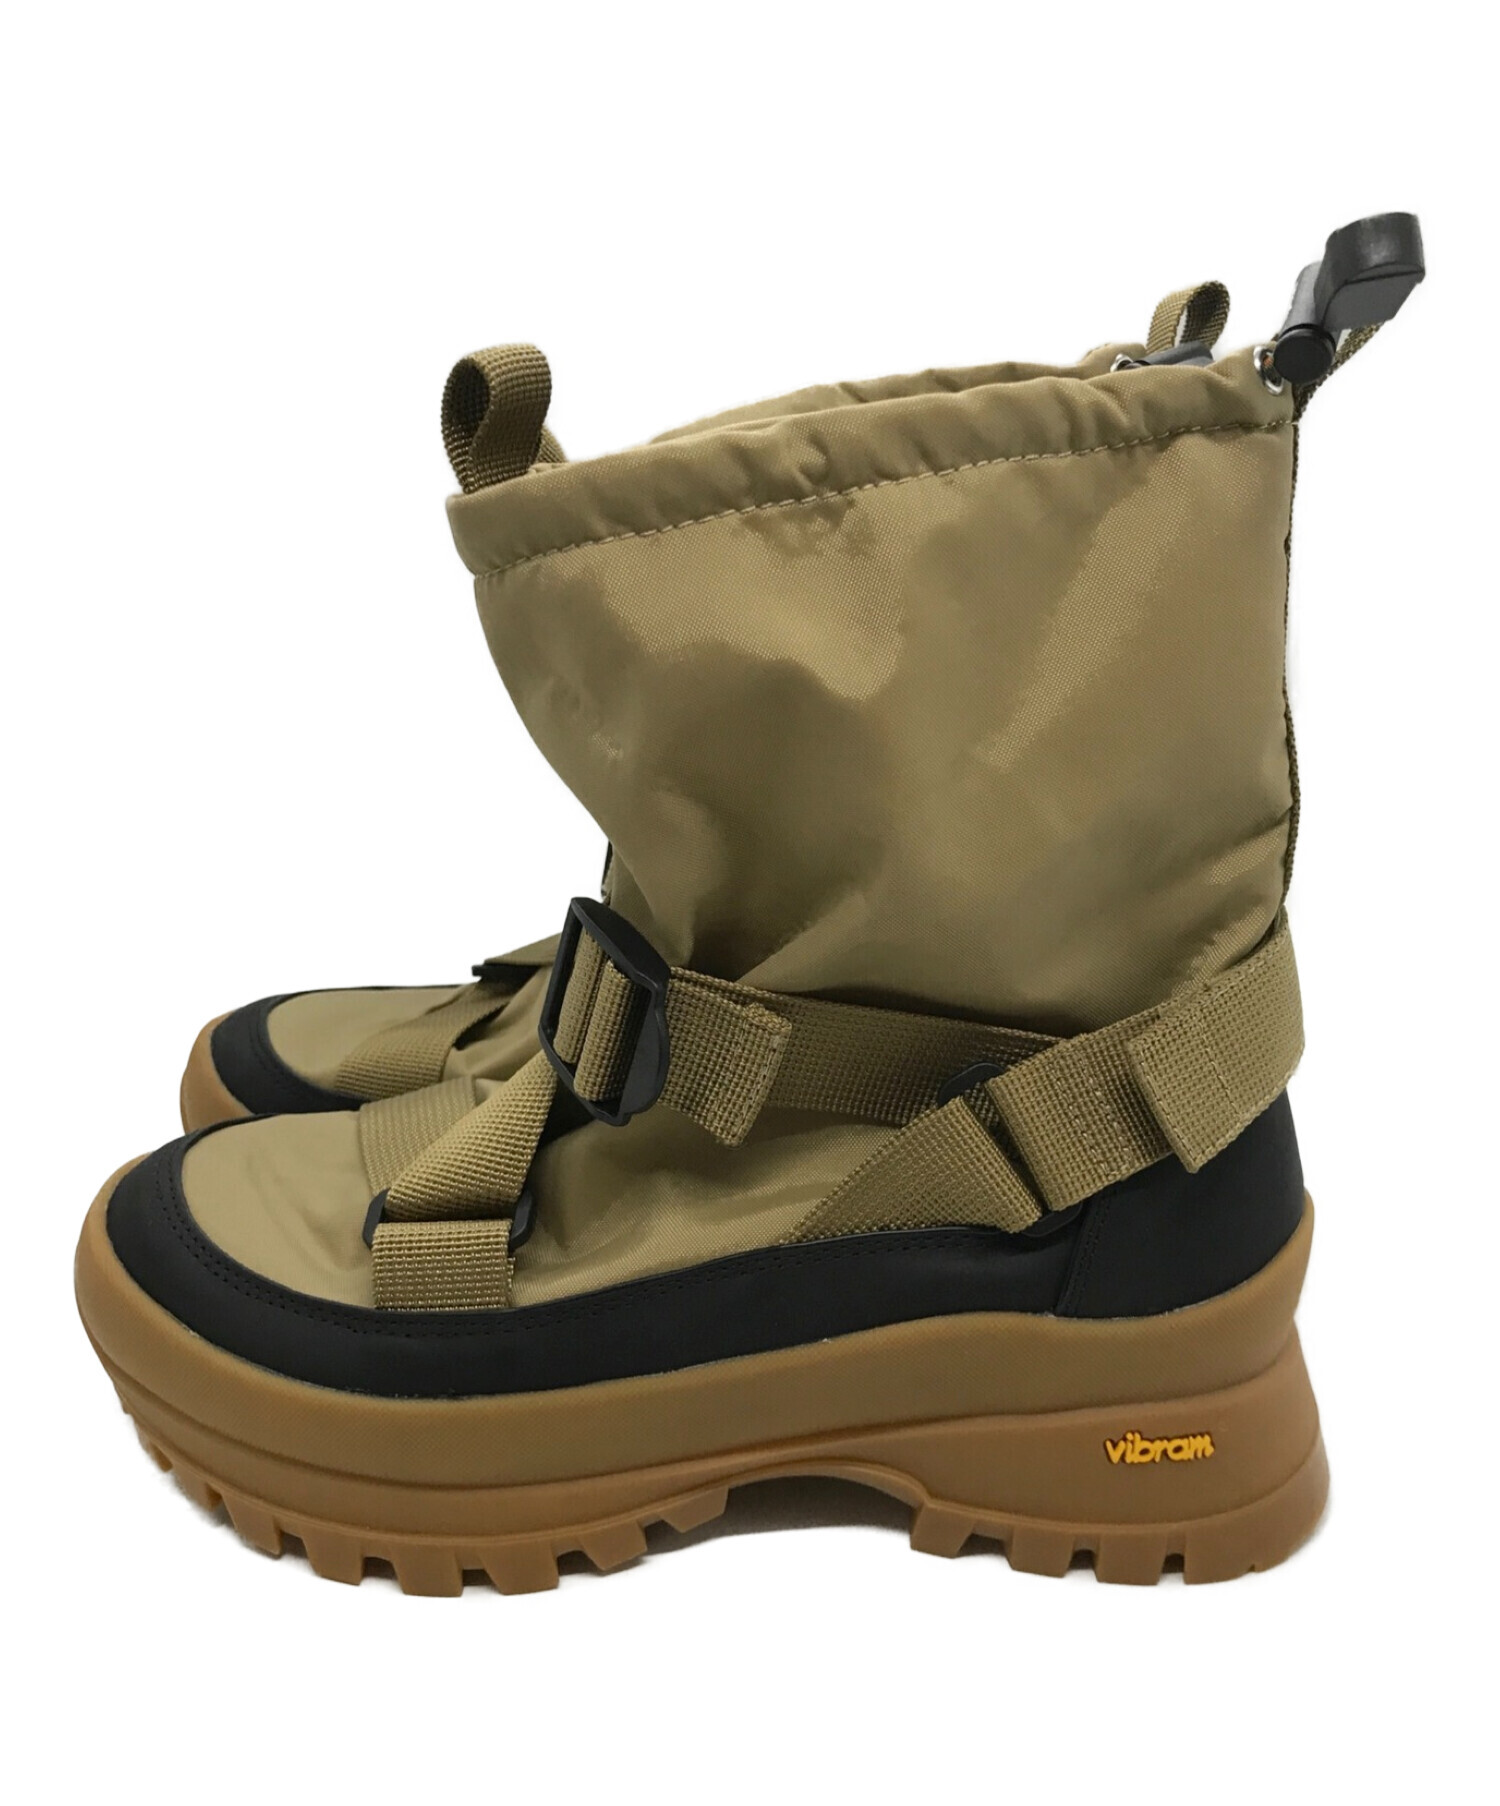 nagonstans (ナゴンスタンス) Belted Boots ベージュ×ブラック サイズ:23